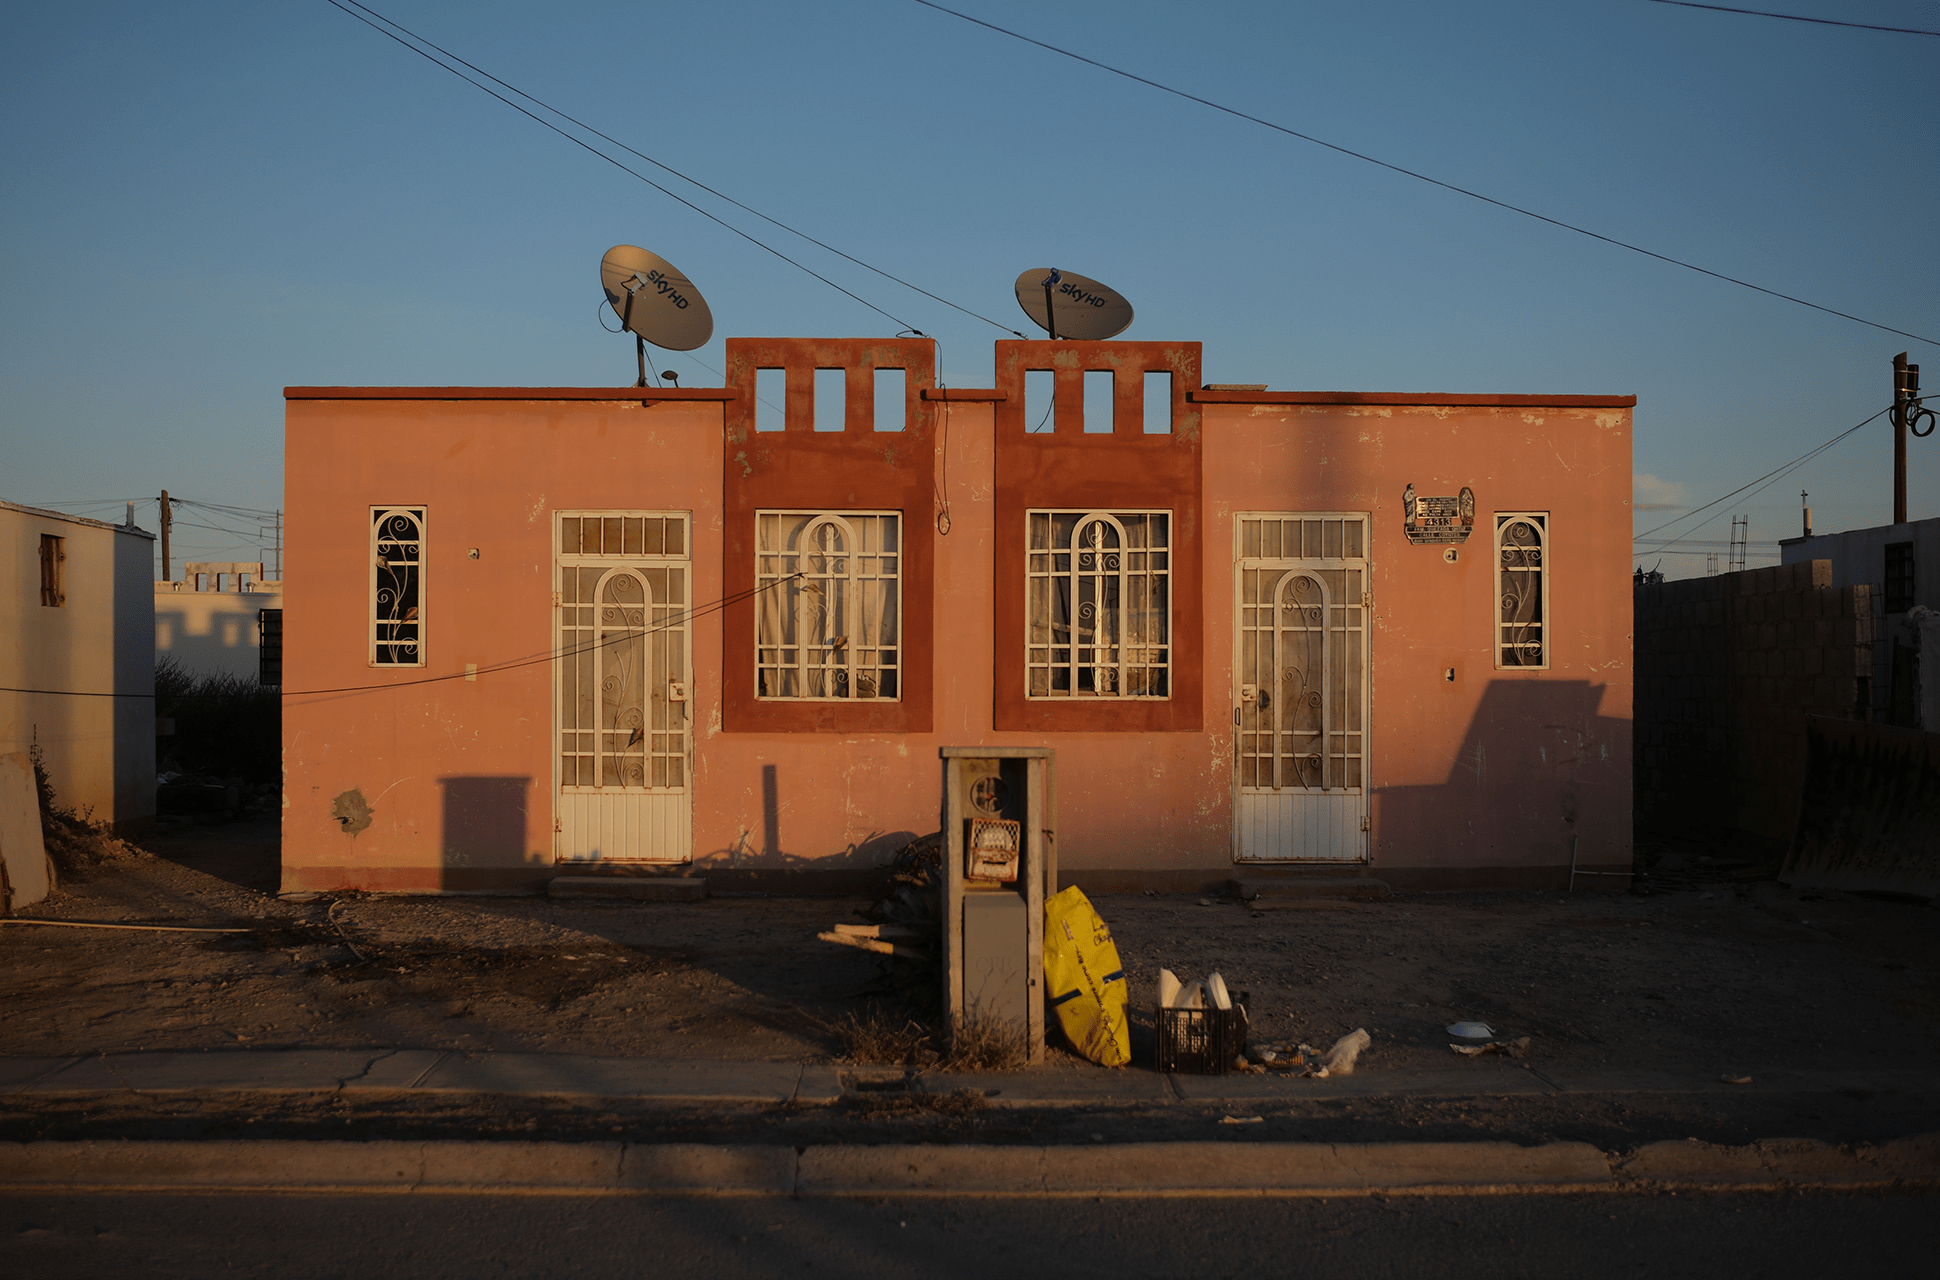 Casas pobres, casas de nadie: Palmas del Sol en Ciudad Juárez